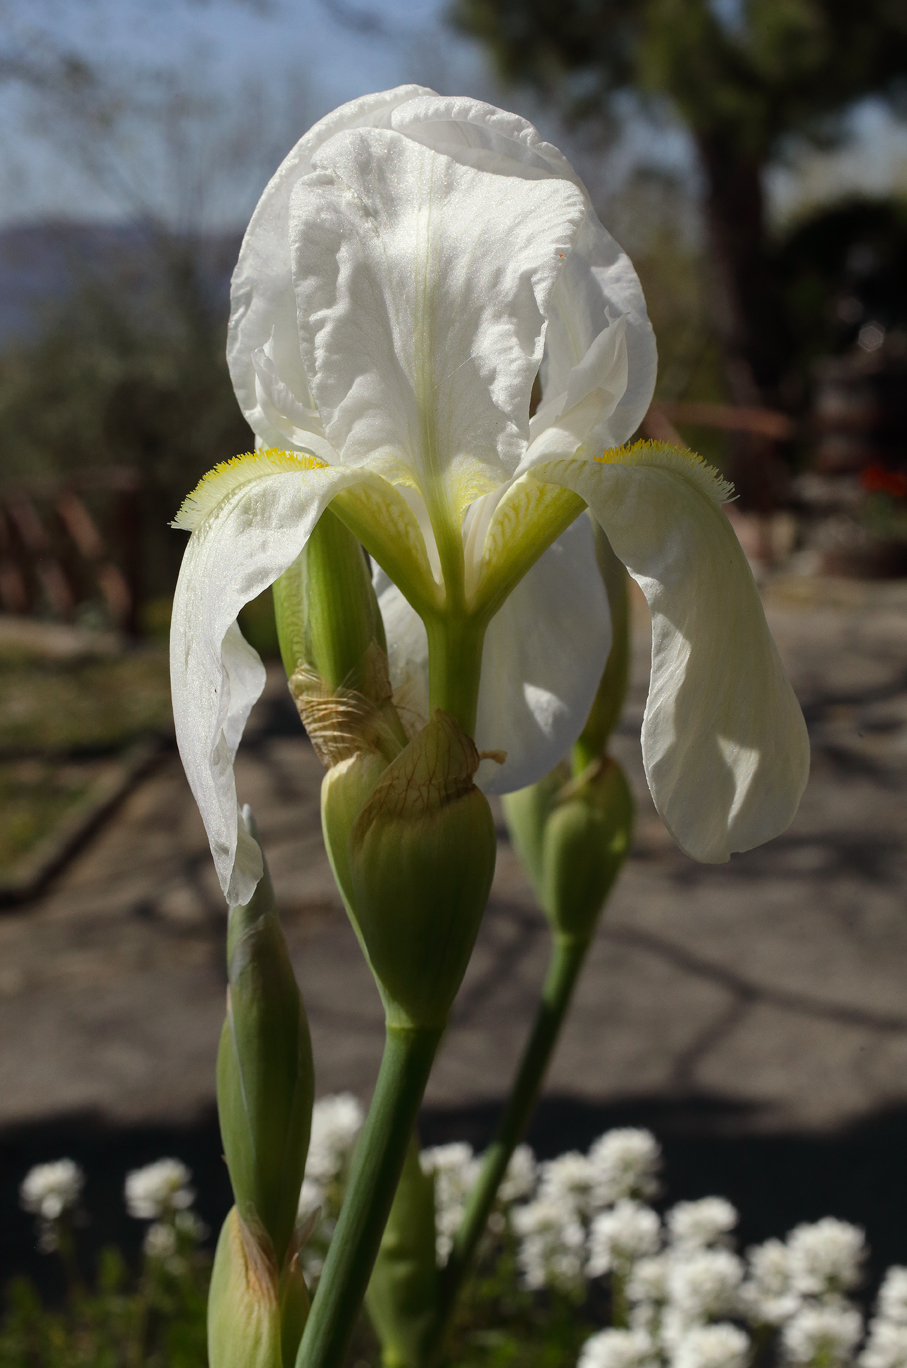 fiore apicale di Iris florentina L. aperto con i 2 bocci sottostanti, sullo sfondo un cortile di campagna con altri fiori bianchi